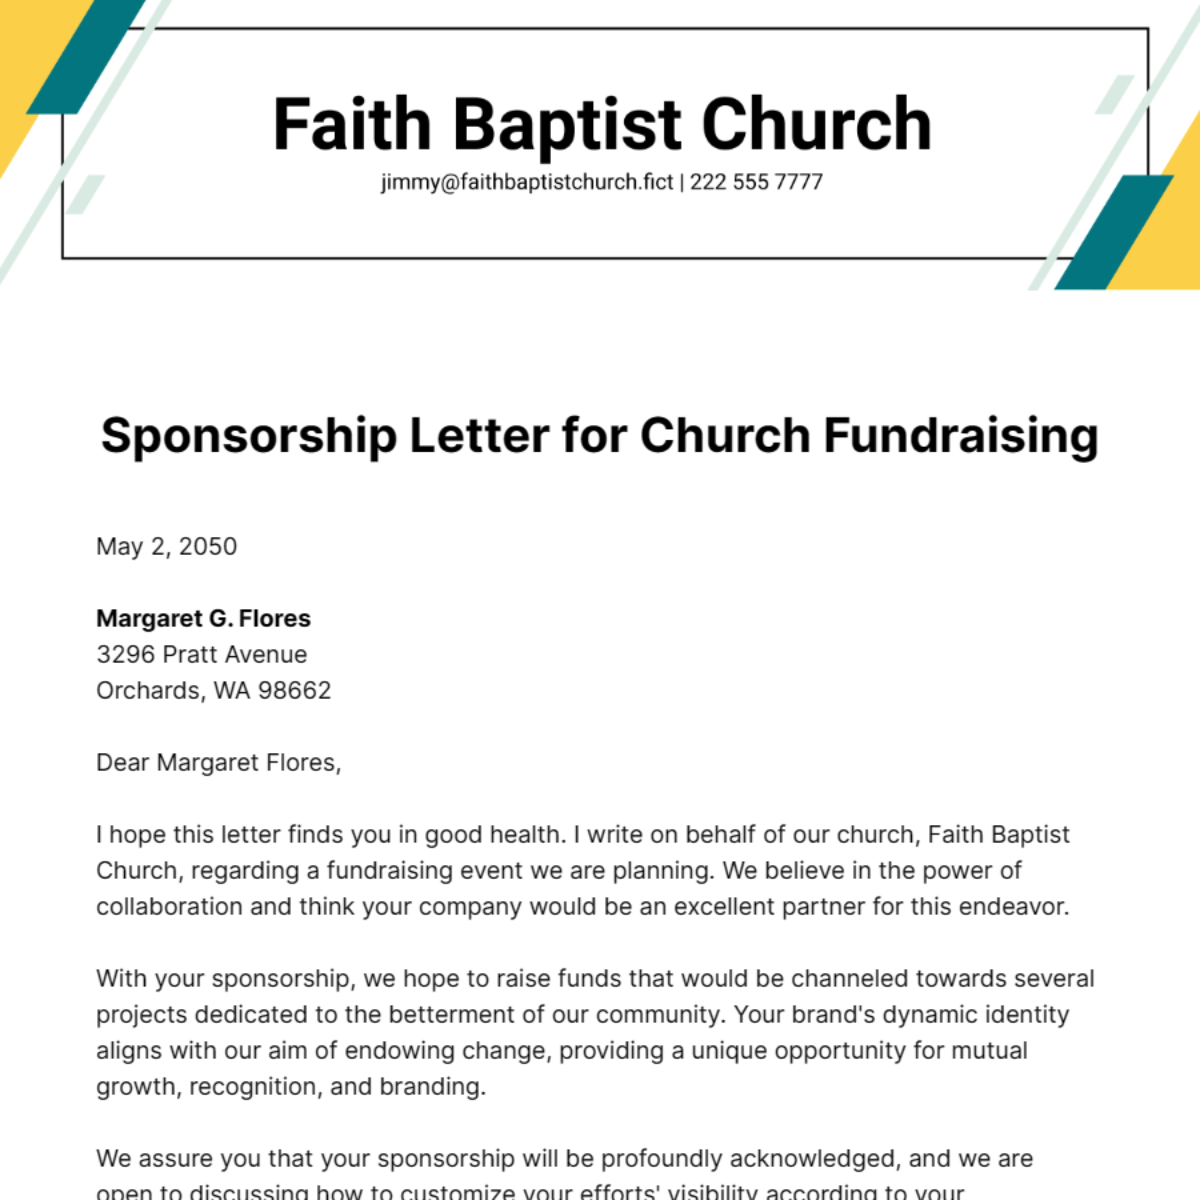 Sponsorship Letter for Church Fundraising Template